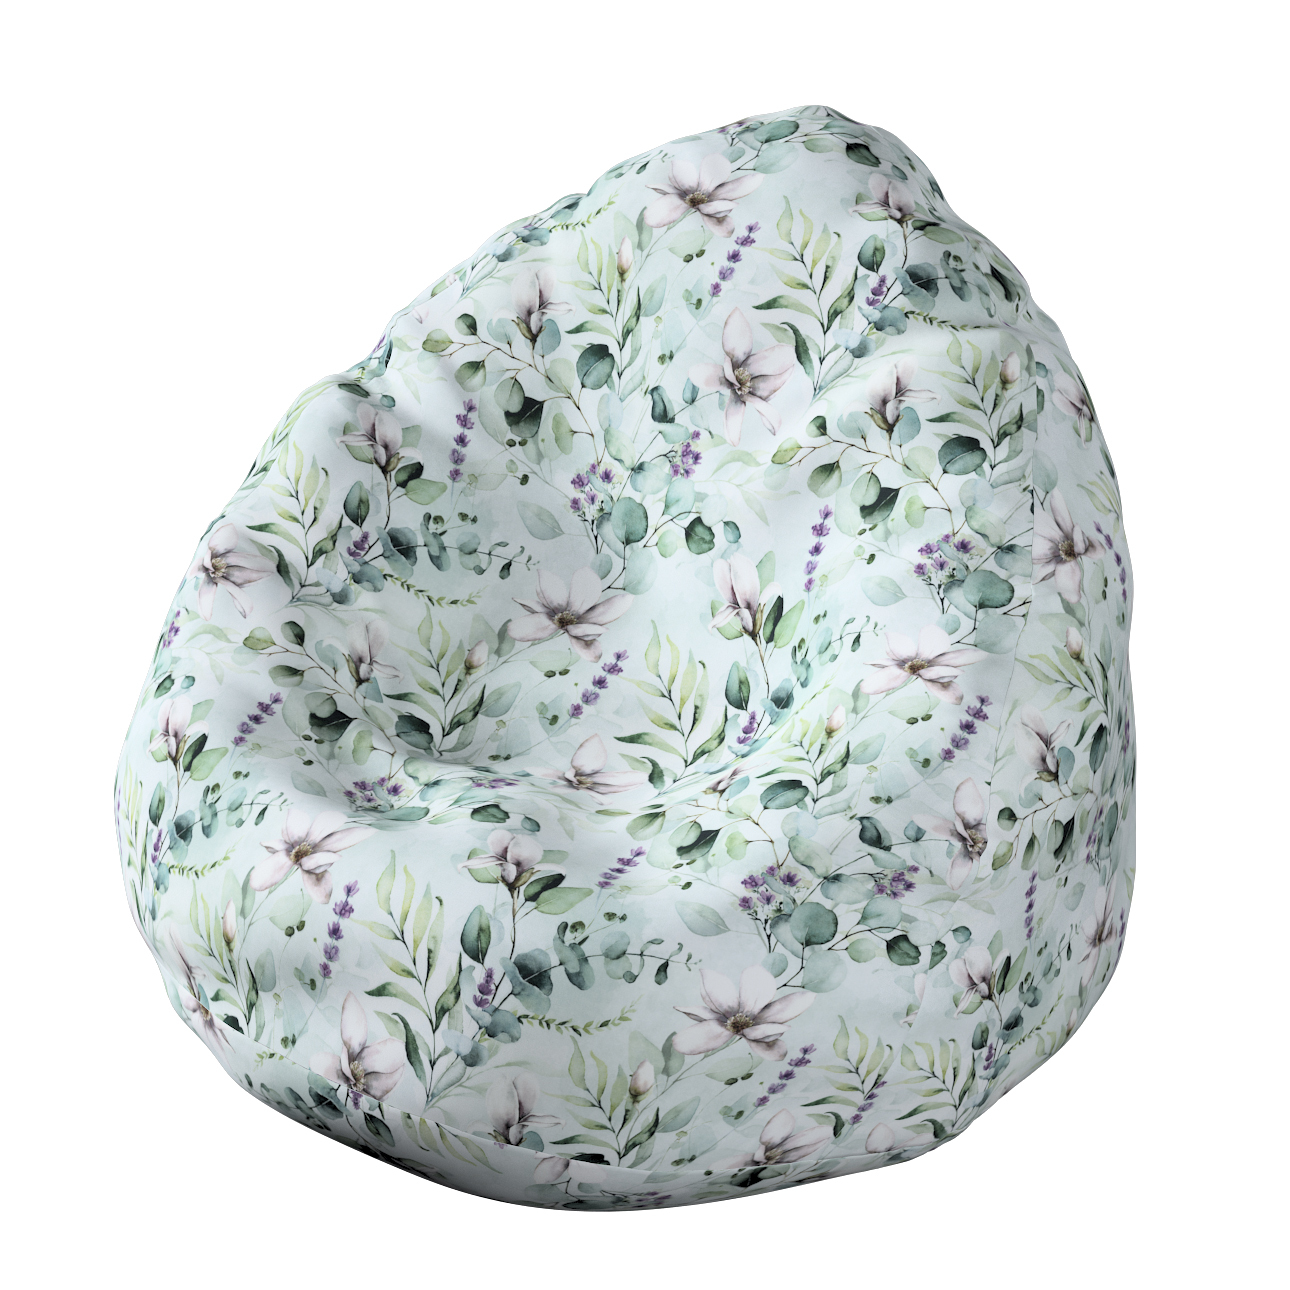 Bezug für Sitzsack, mintgrün-weiß, Bezug für Sitzsack Ø60 x 105 cm, Flowers günstig online kaufen